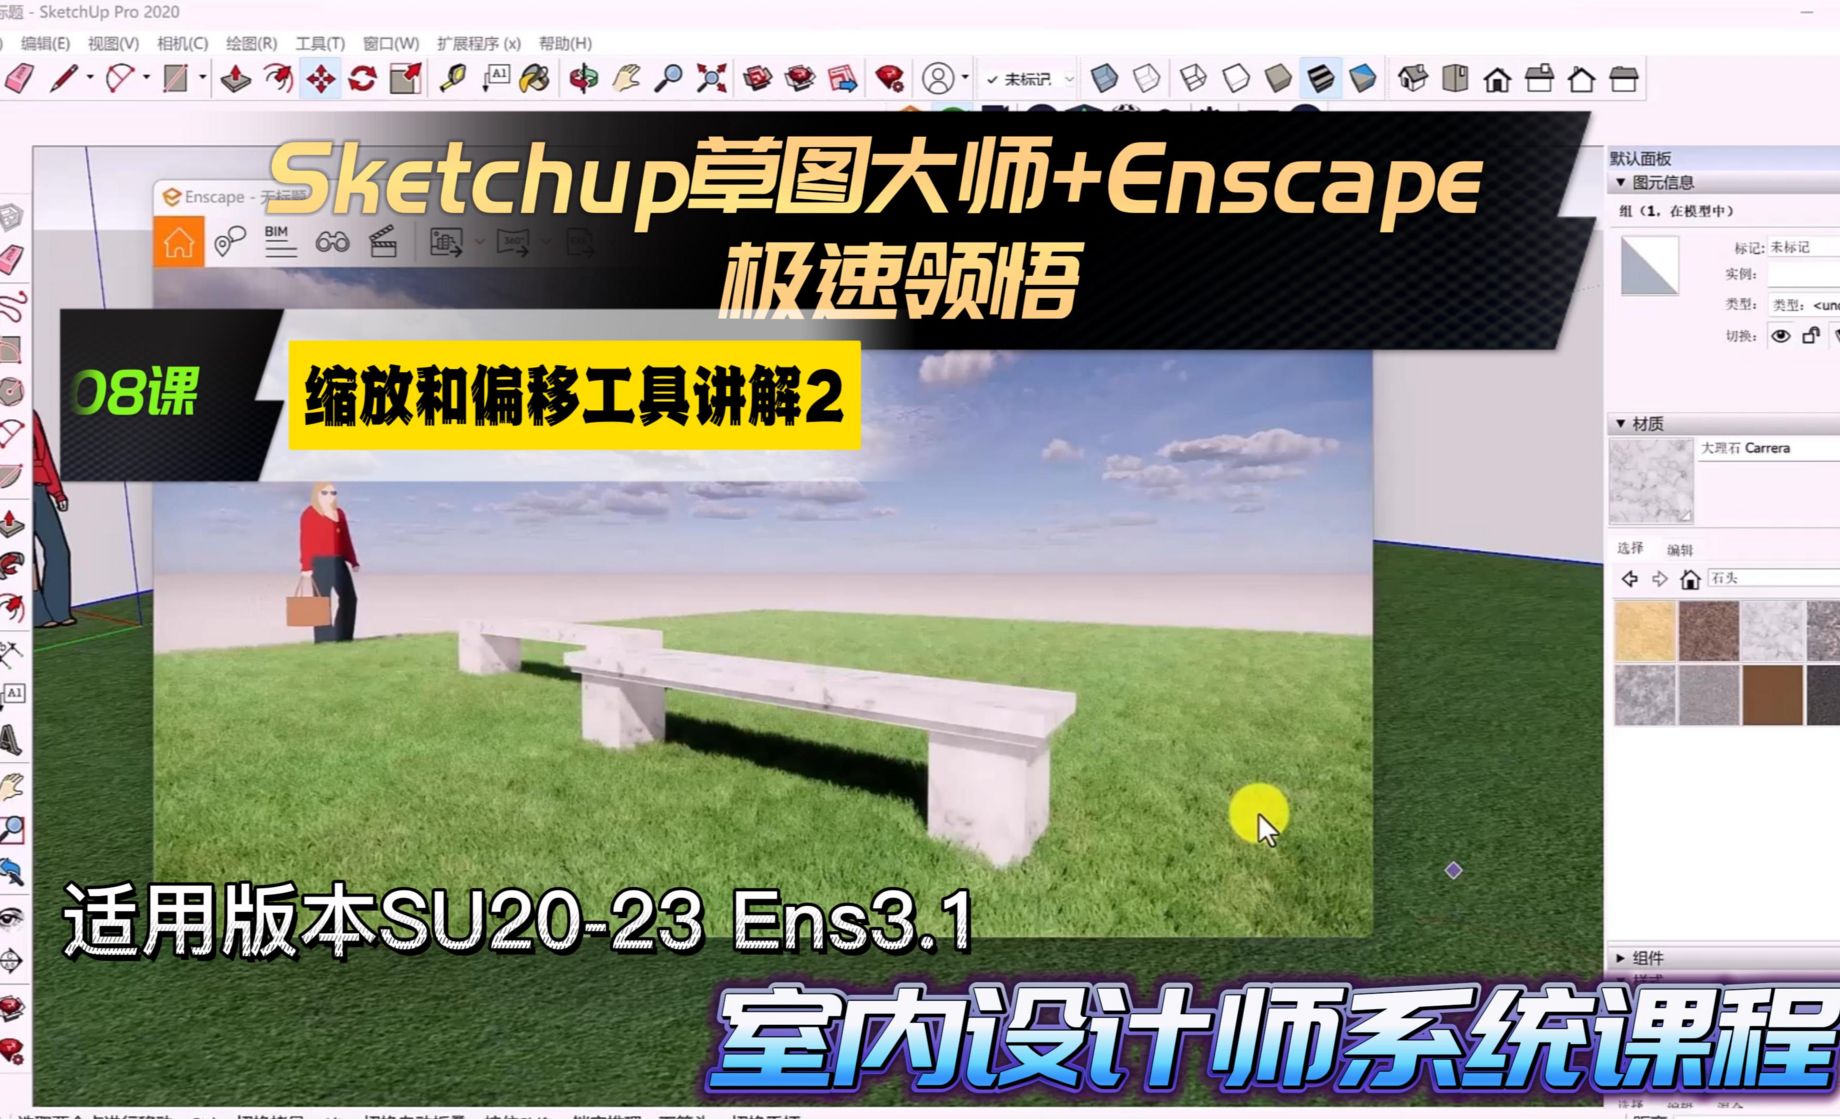 Sketchup+Enscape室内设计极速领悟-缩放和偏移工具2